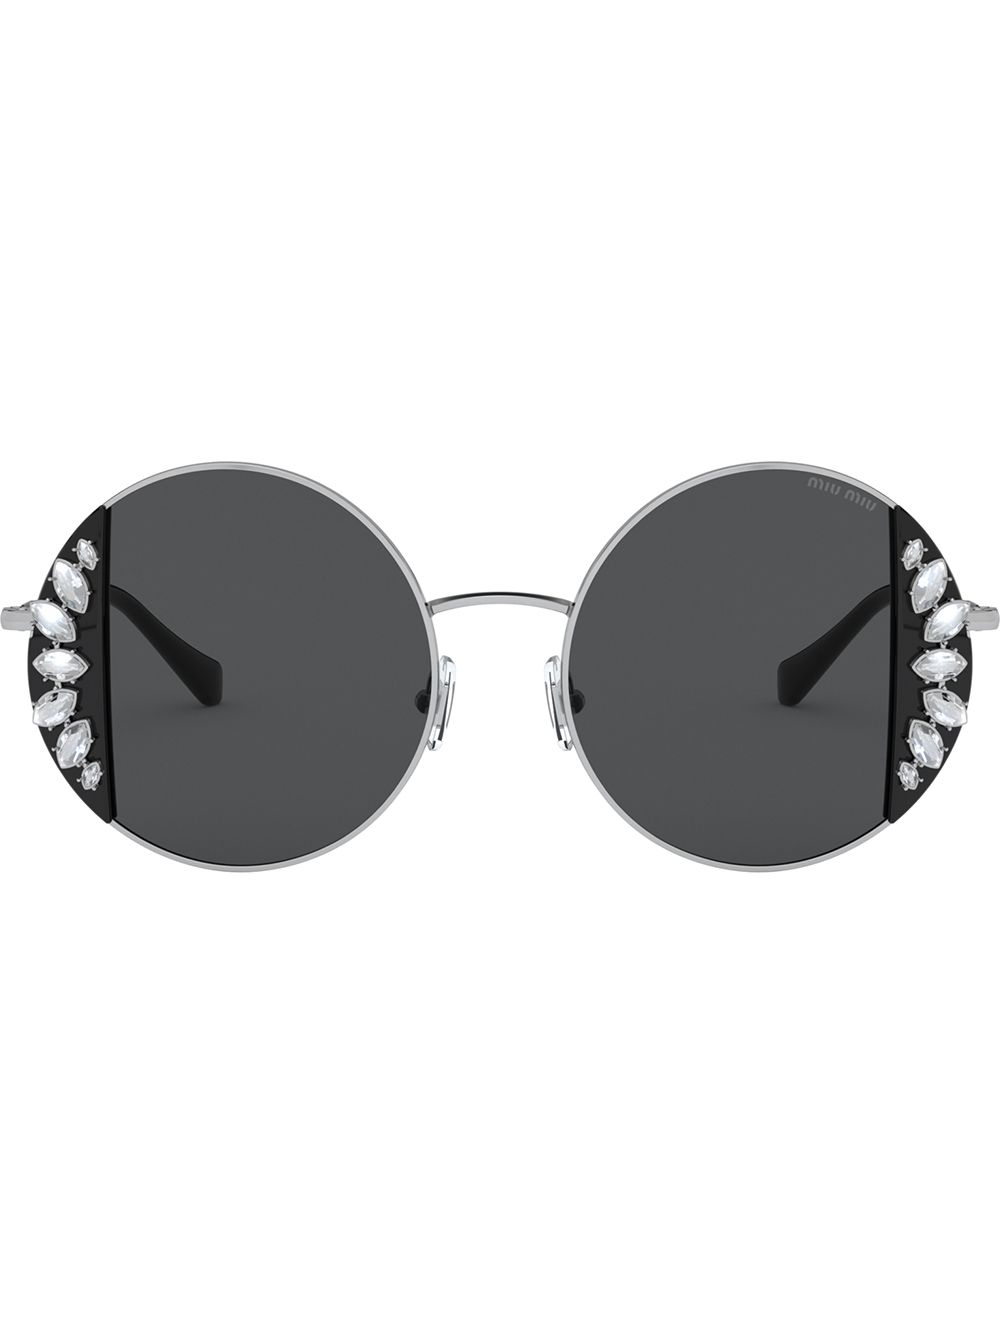 фото Miu miu eyewear солнцезащитные очки noir в круглой оправе